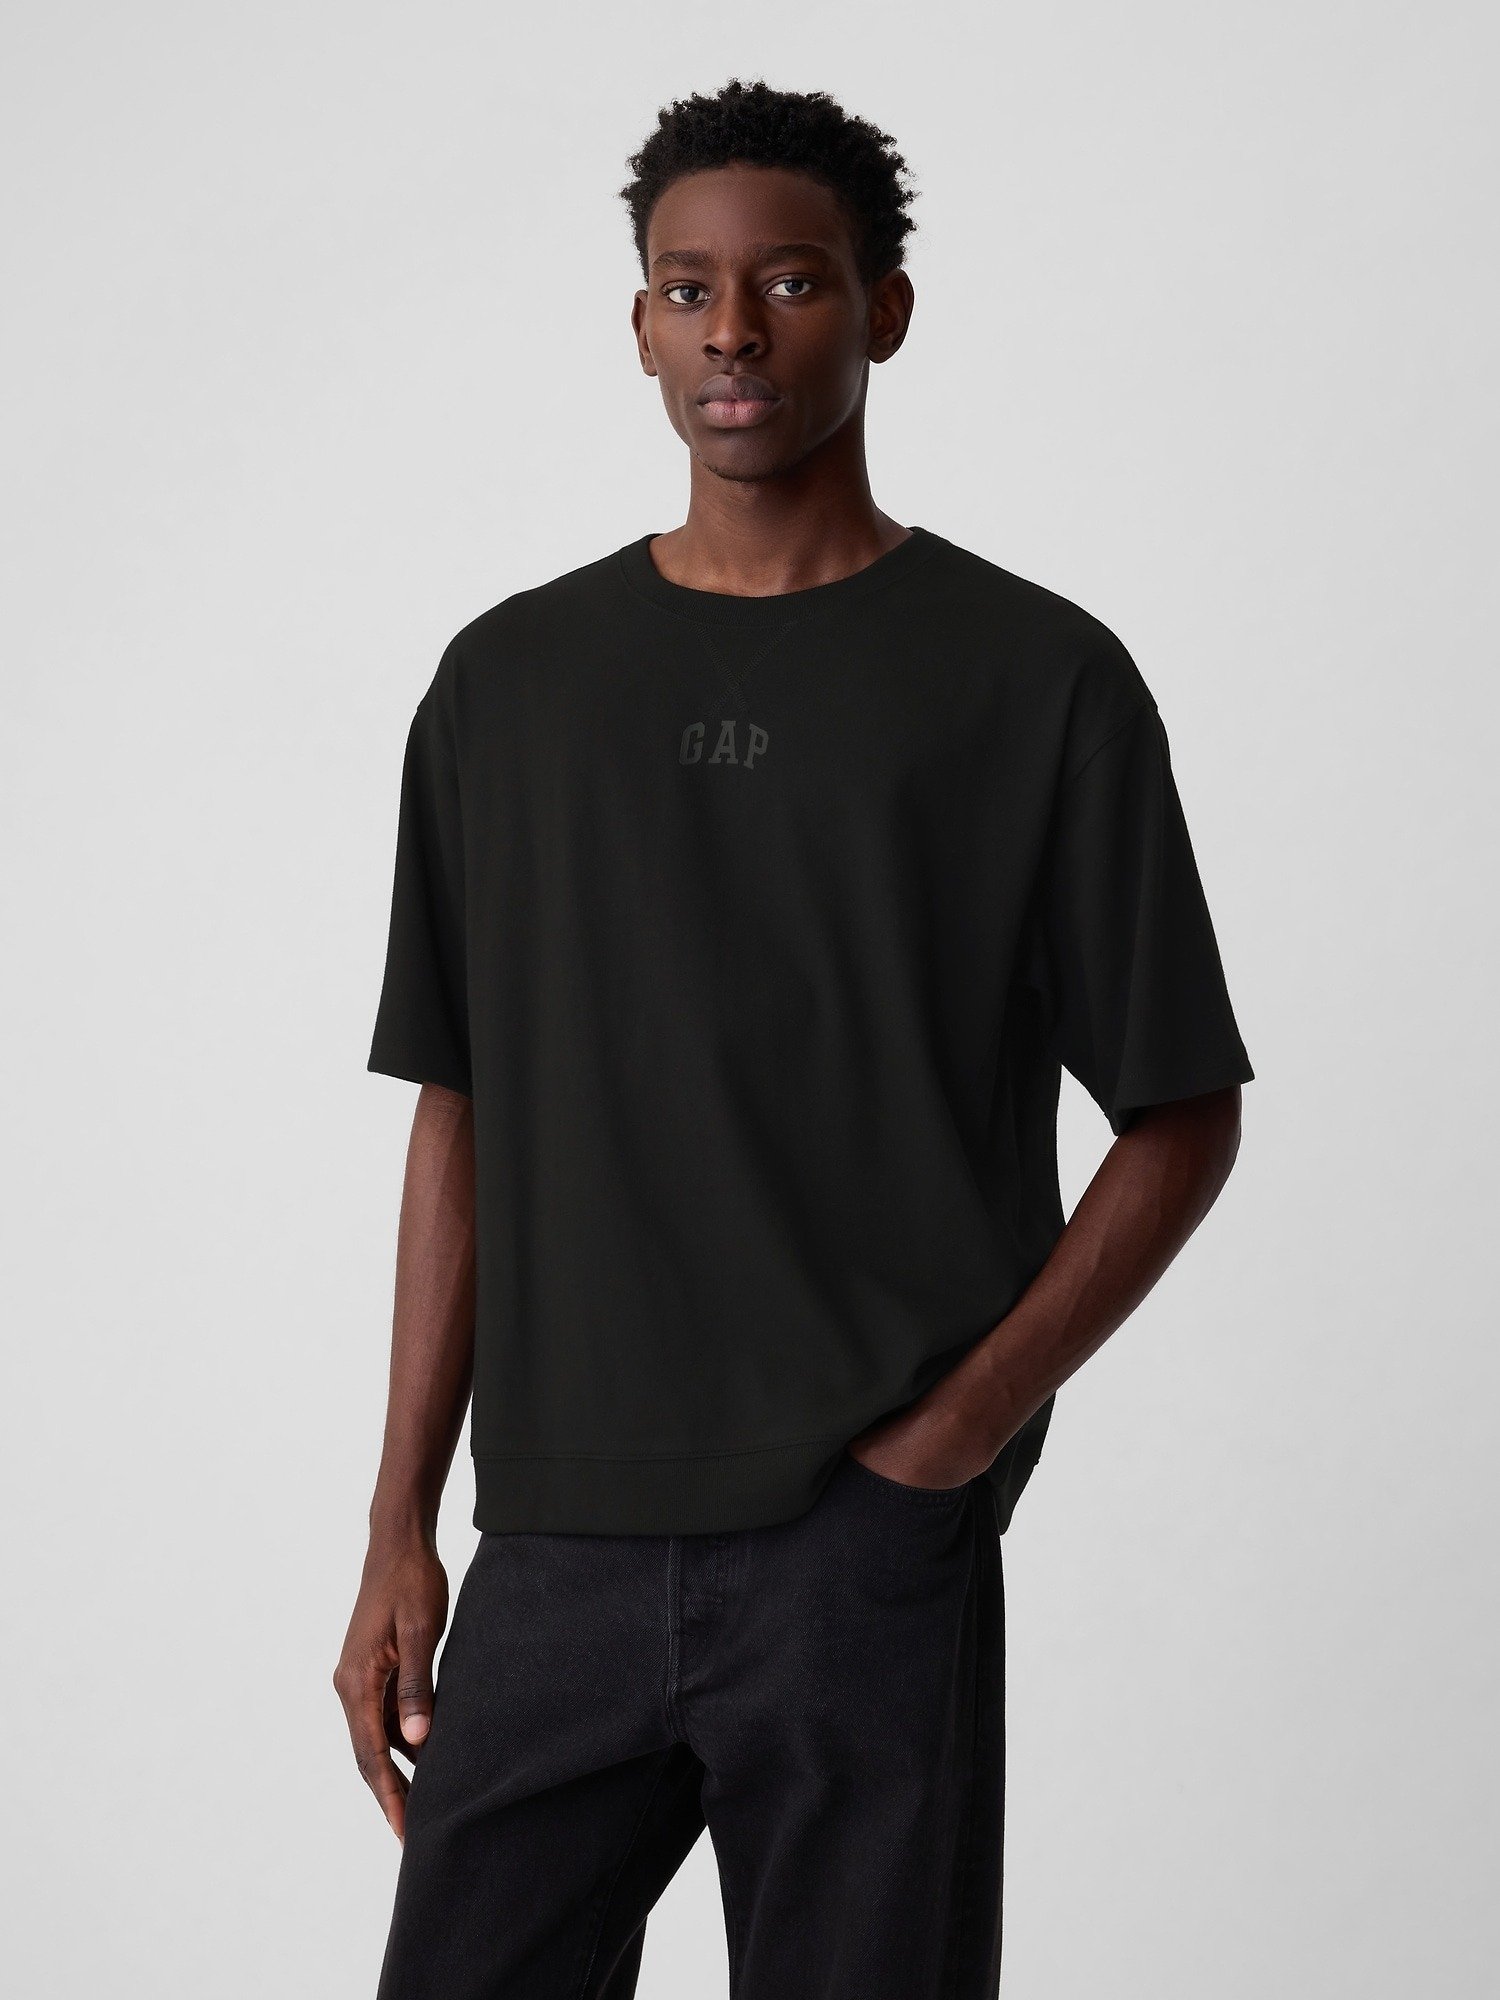 Mini Gap Logo Oversize T-Shirt product image